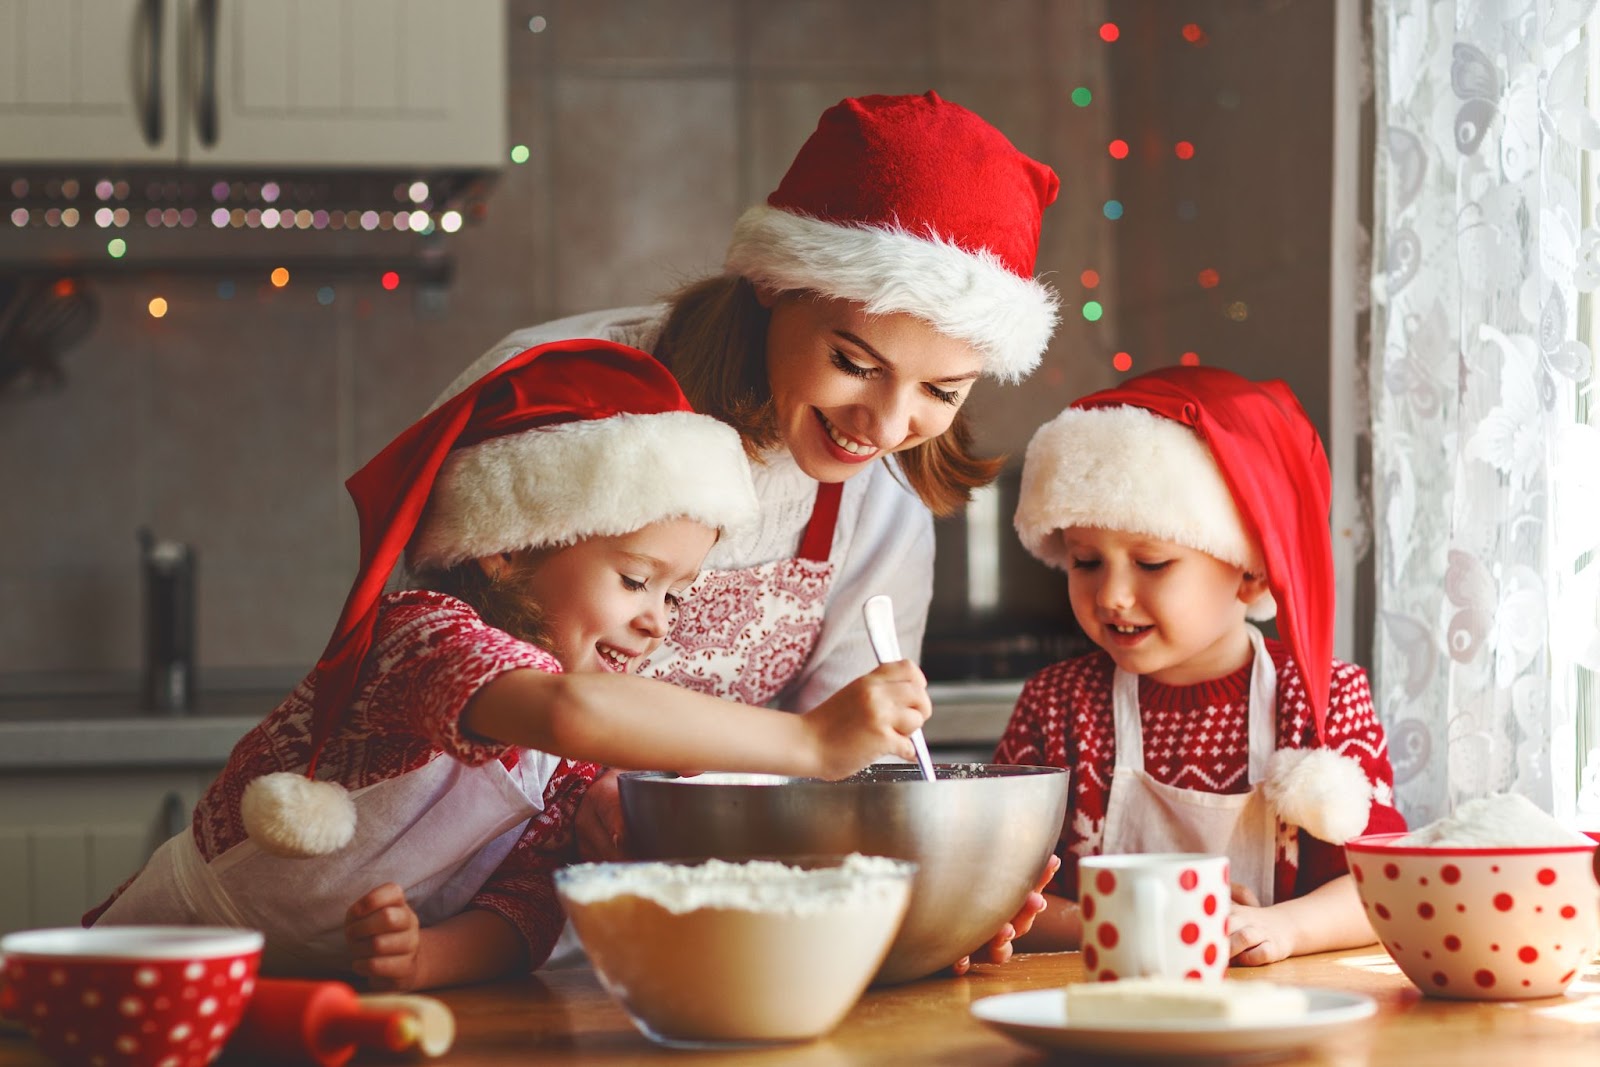 Apunta estas recetas navideñas fáciles para preparar el menú de Navidad con tus hijos y triunfar